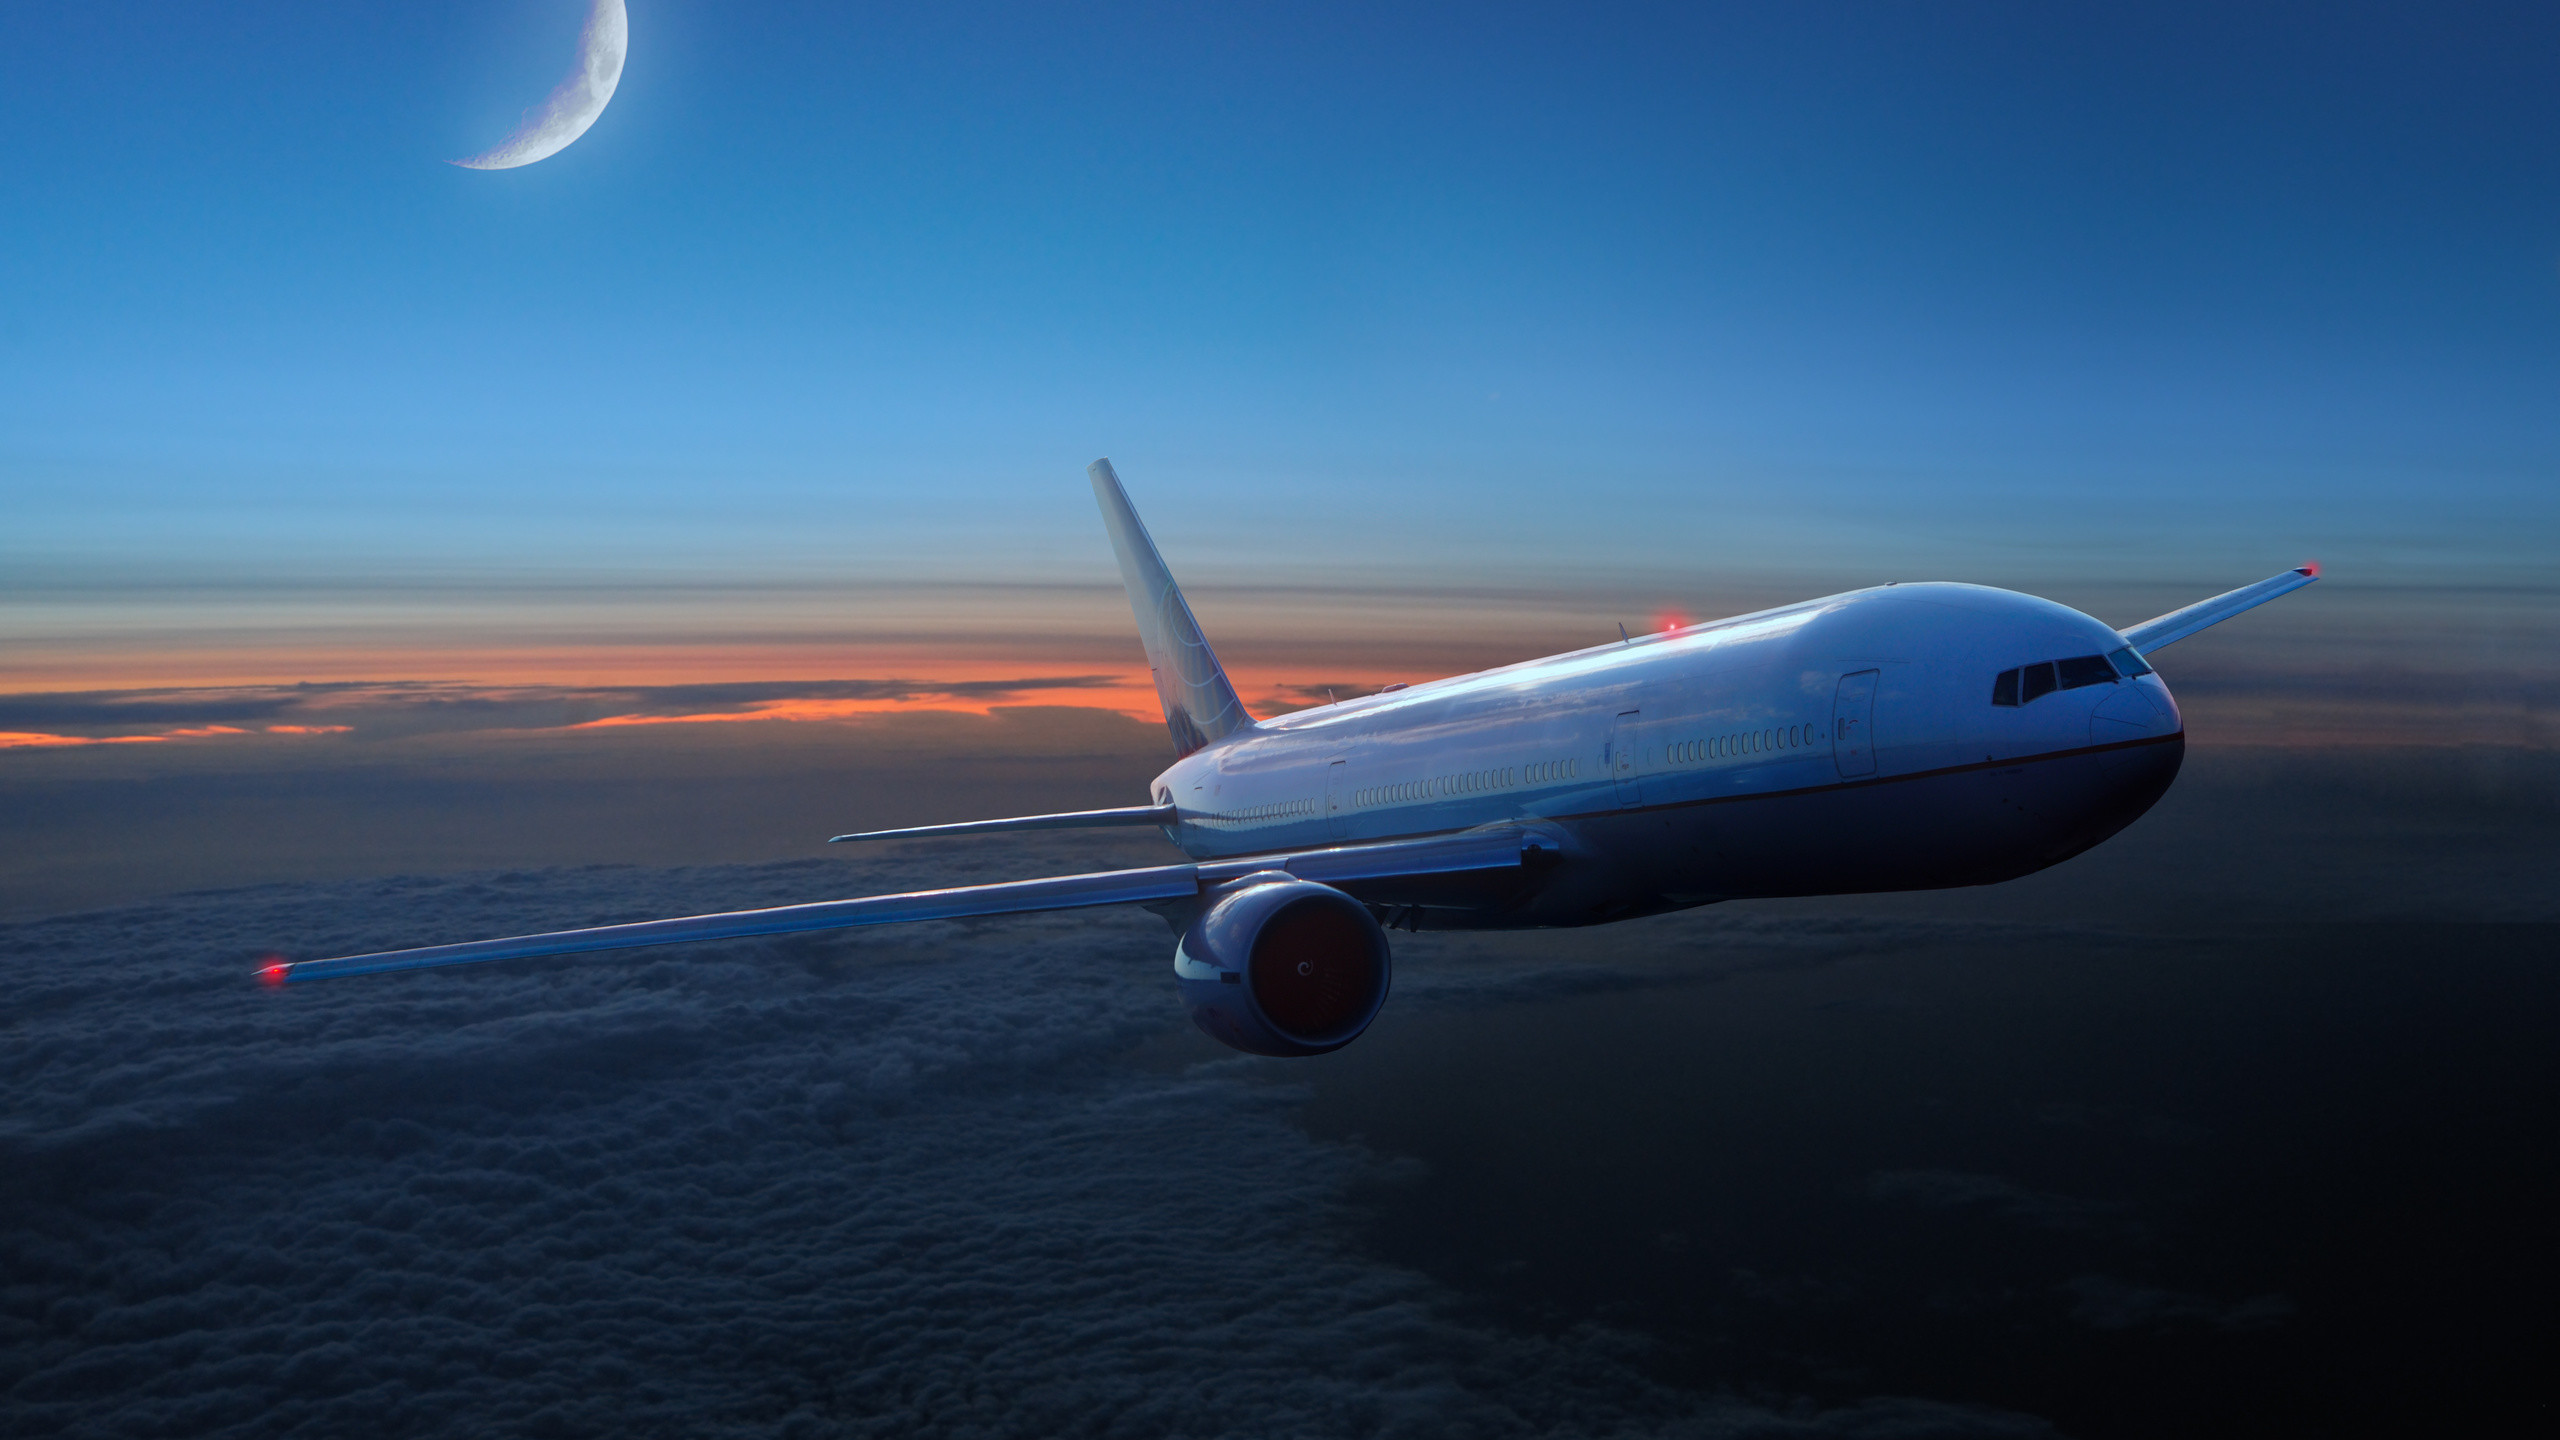 2560x1440 Big Commercial Jet Airliner Sunset Clouds Desktop Wallpaper Uploaded by  tcherniy